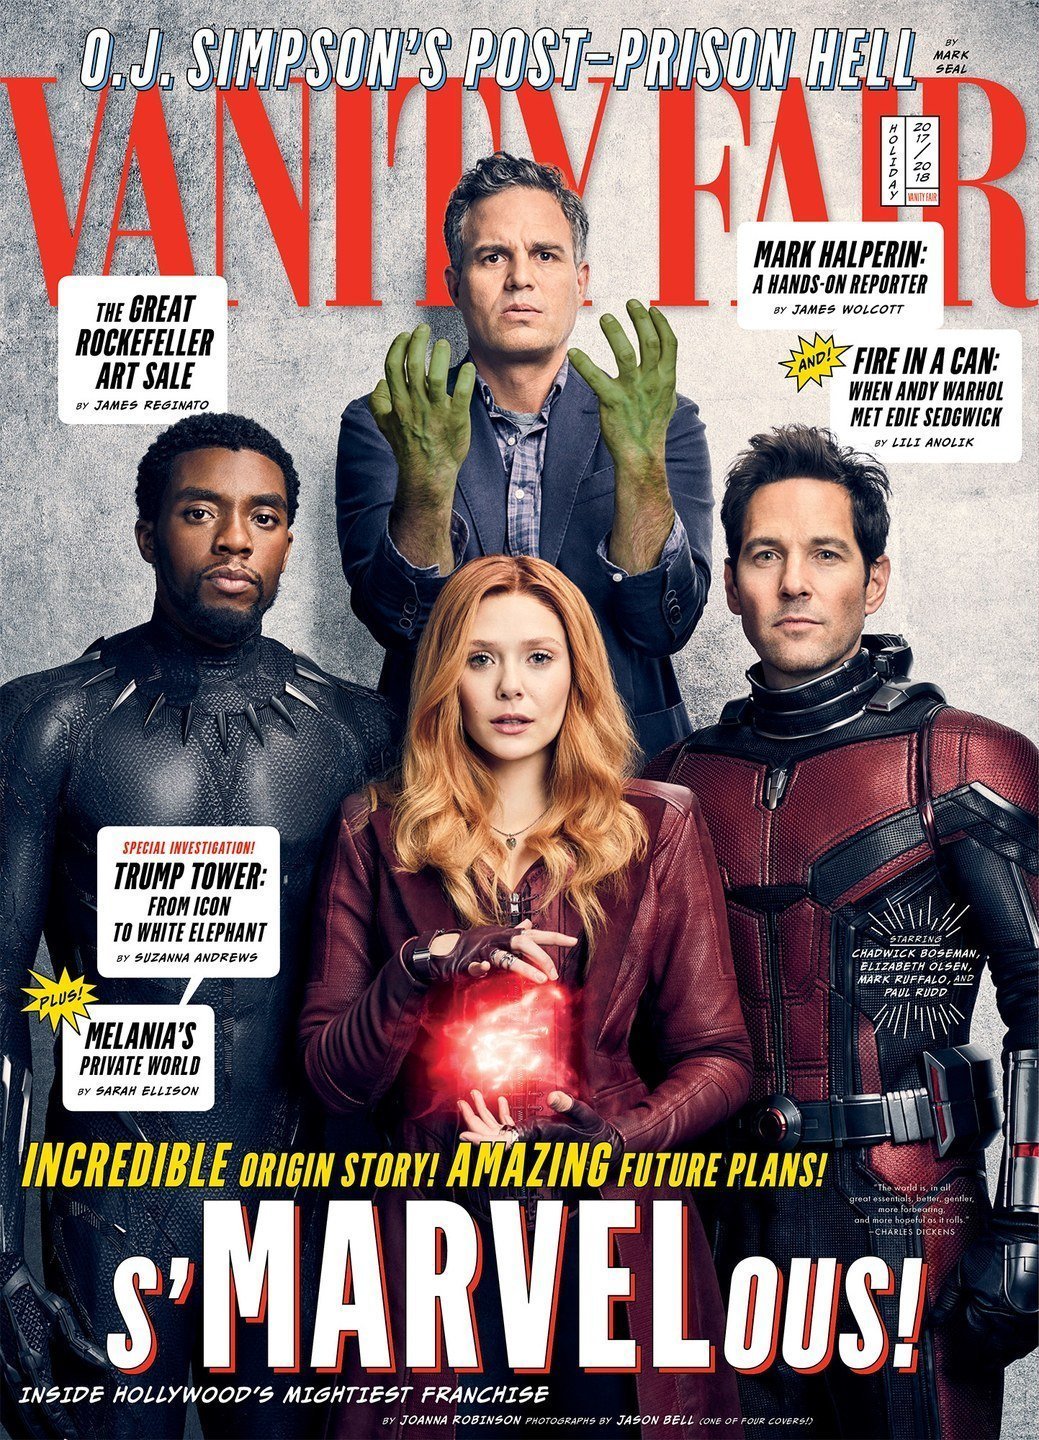 Couverture de Vanity Fair avec Hulk, Black Panther, Ant-Man et Scarlet Witch